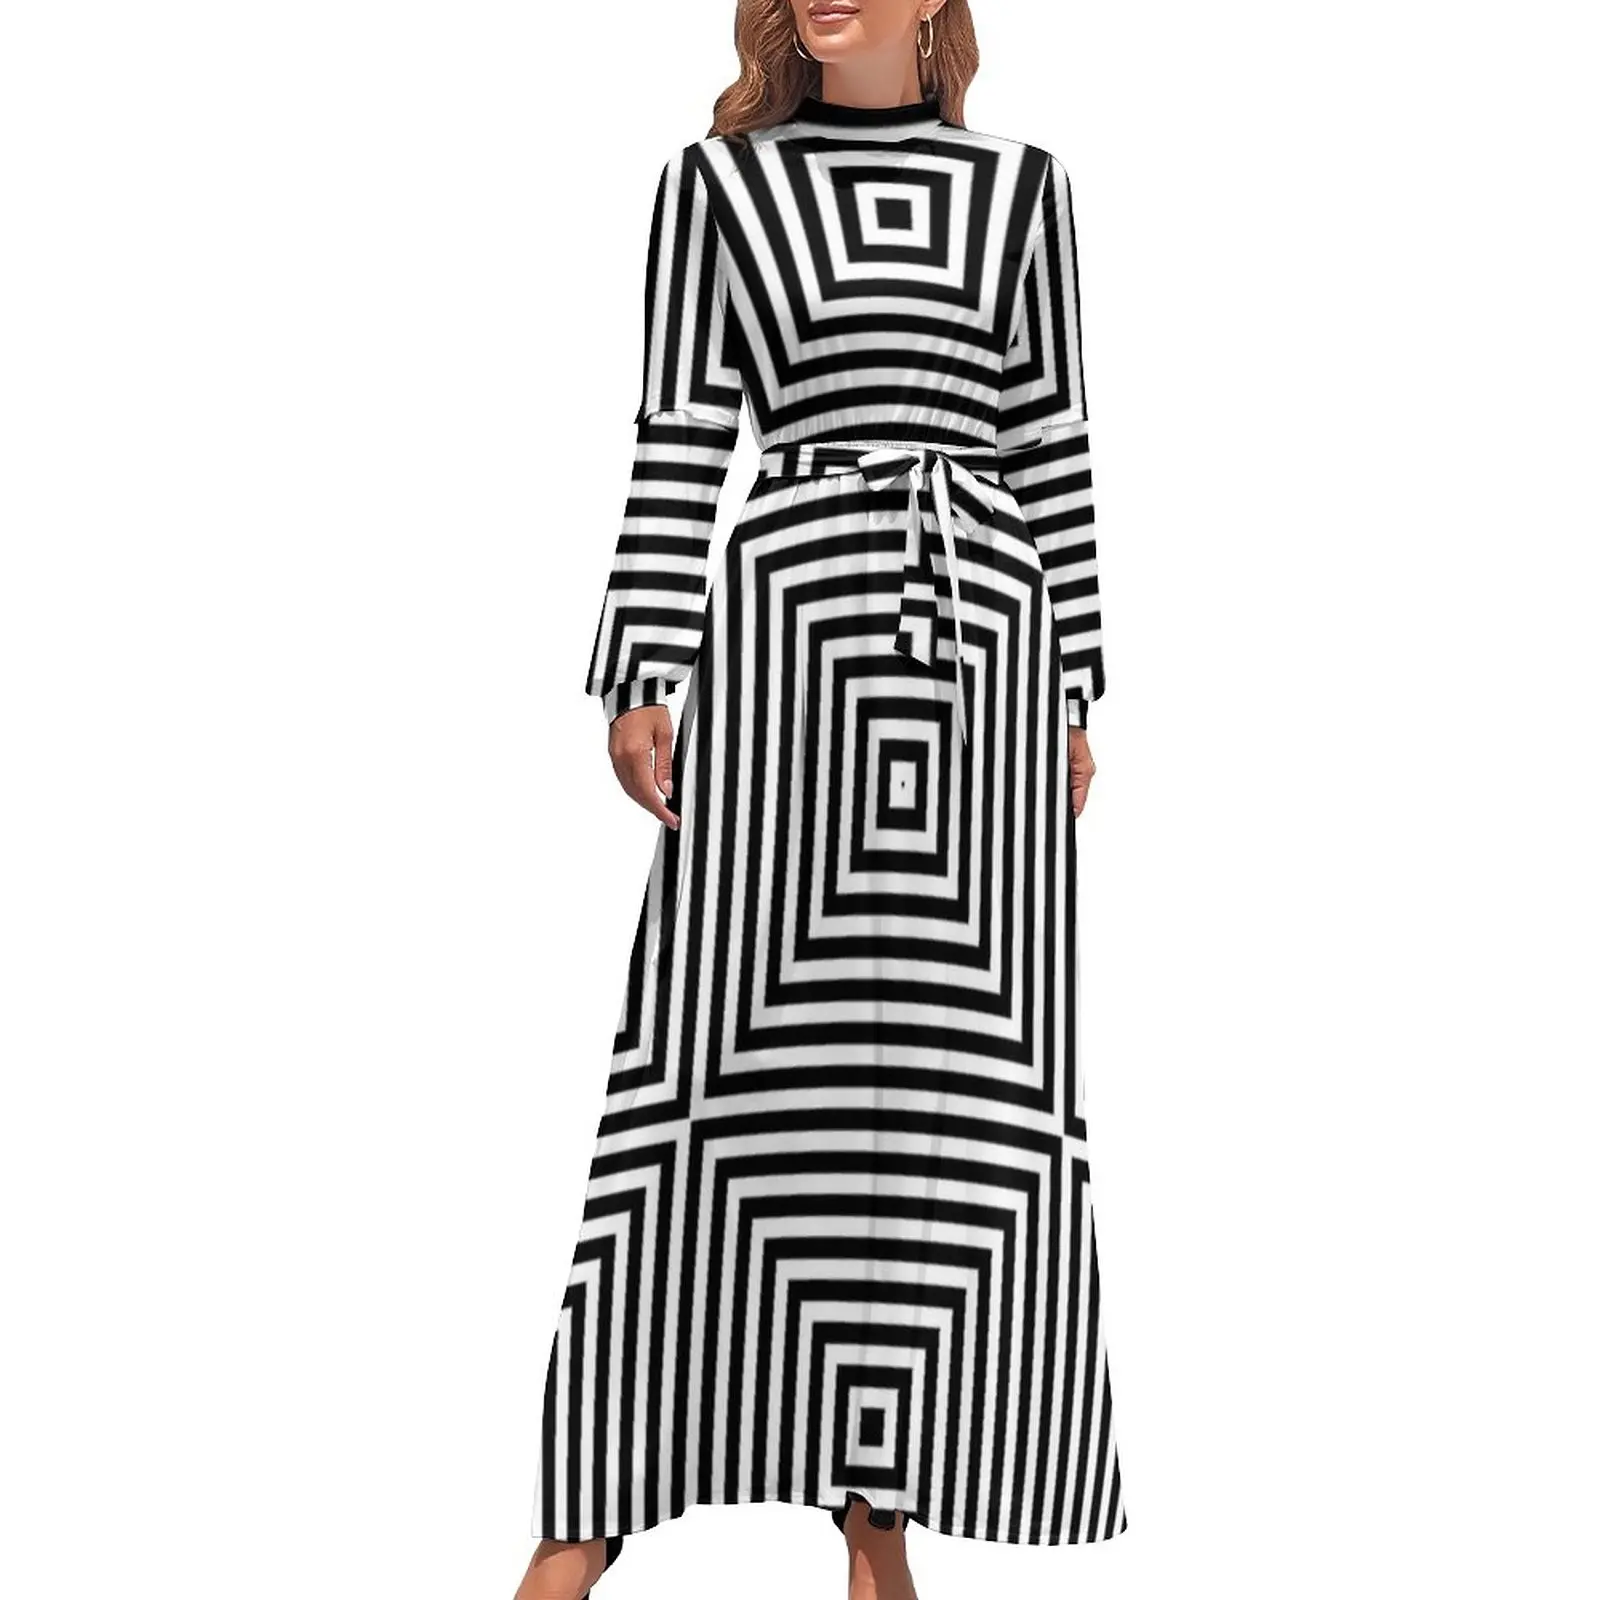 

Психоделическое платье, квадратное модное платье макси с рисунком оптической иллюзии, платье с высоким воротником и длинным рукавом, пляжные длинные платья в стиле бохо